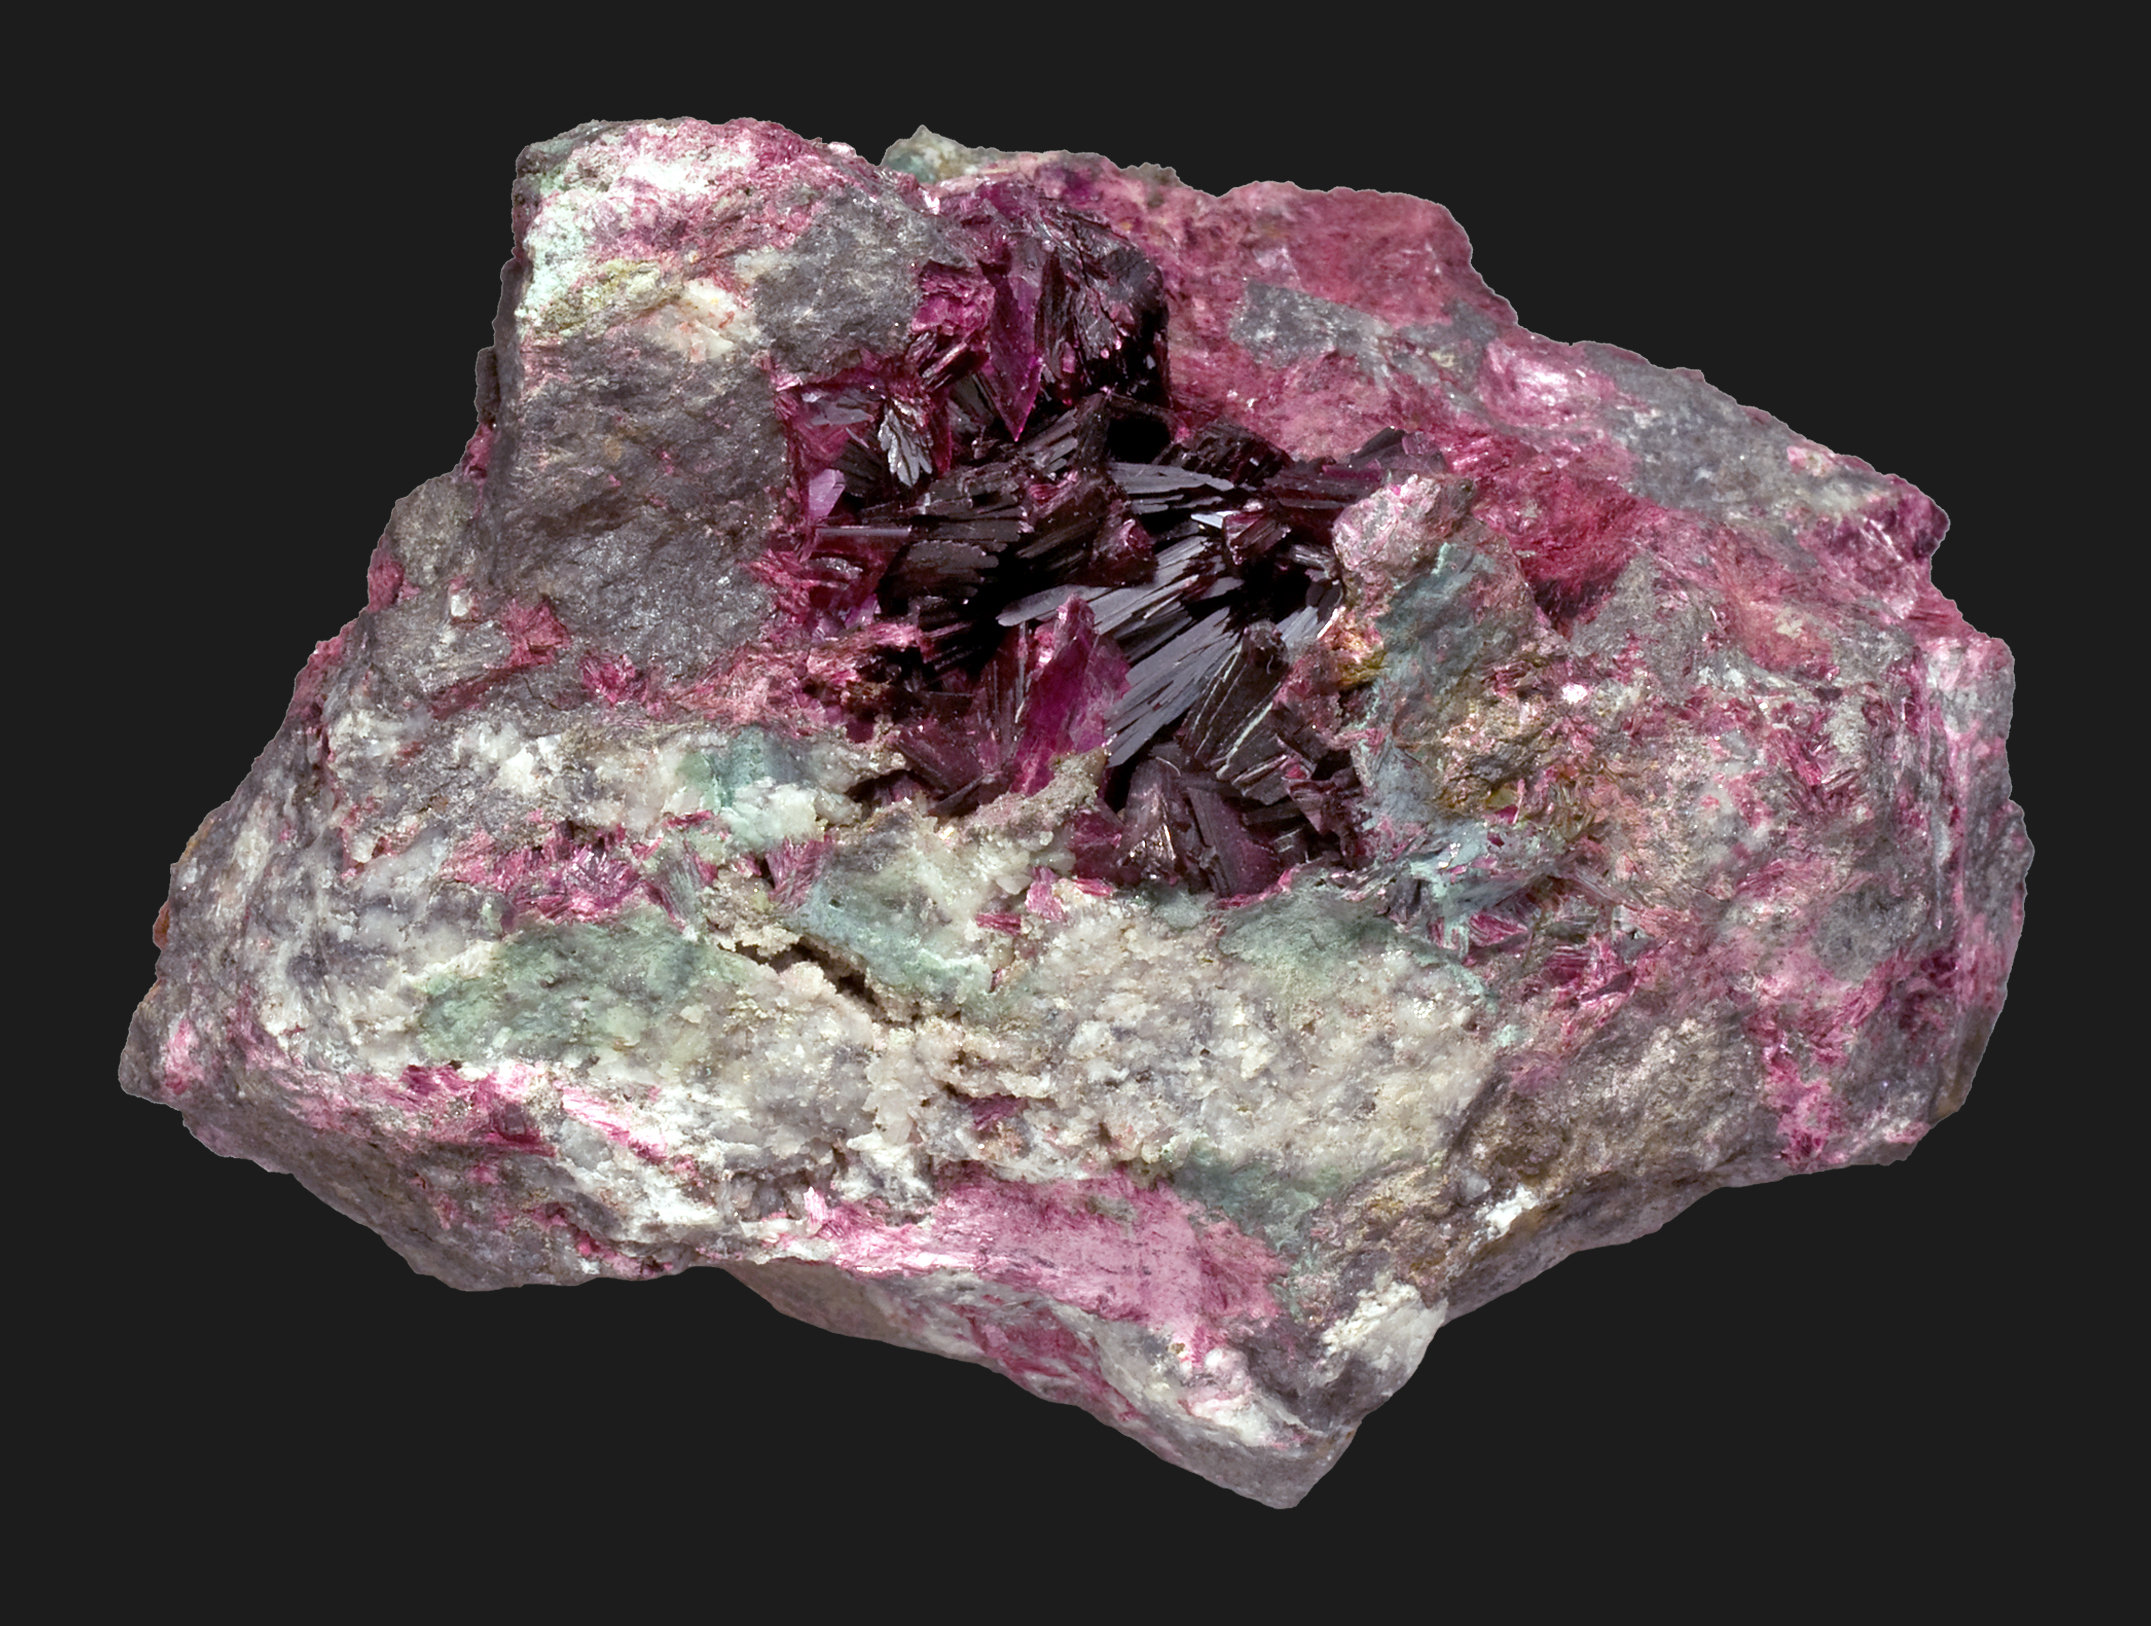 specimens/s_imagesCM/Erythrite-8EV69V9f.jpg